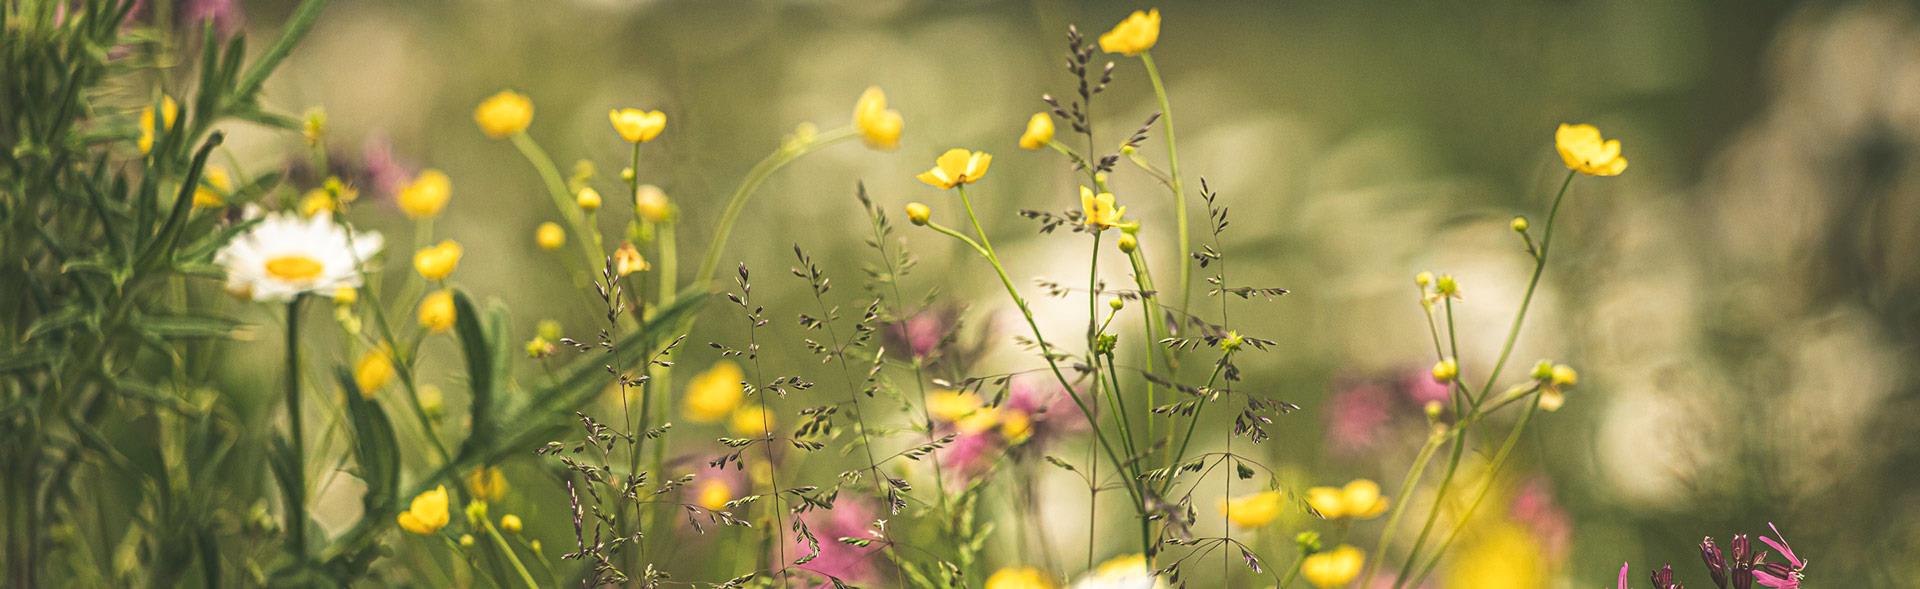 Nærbillede af gule blomster i have